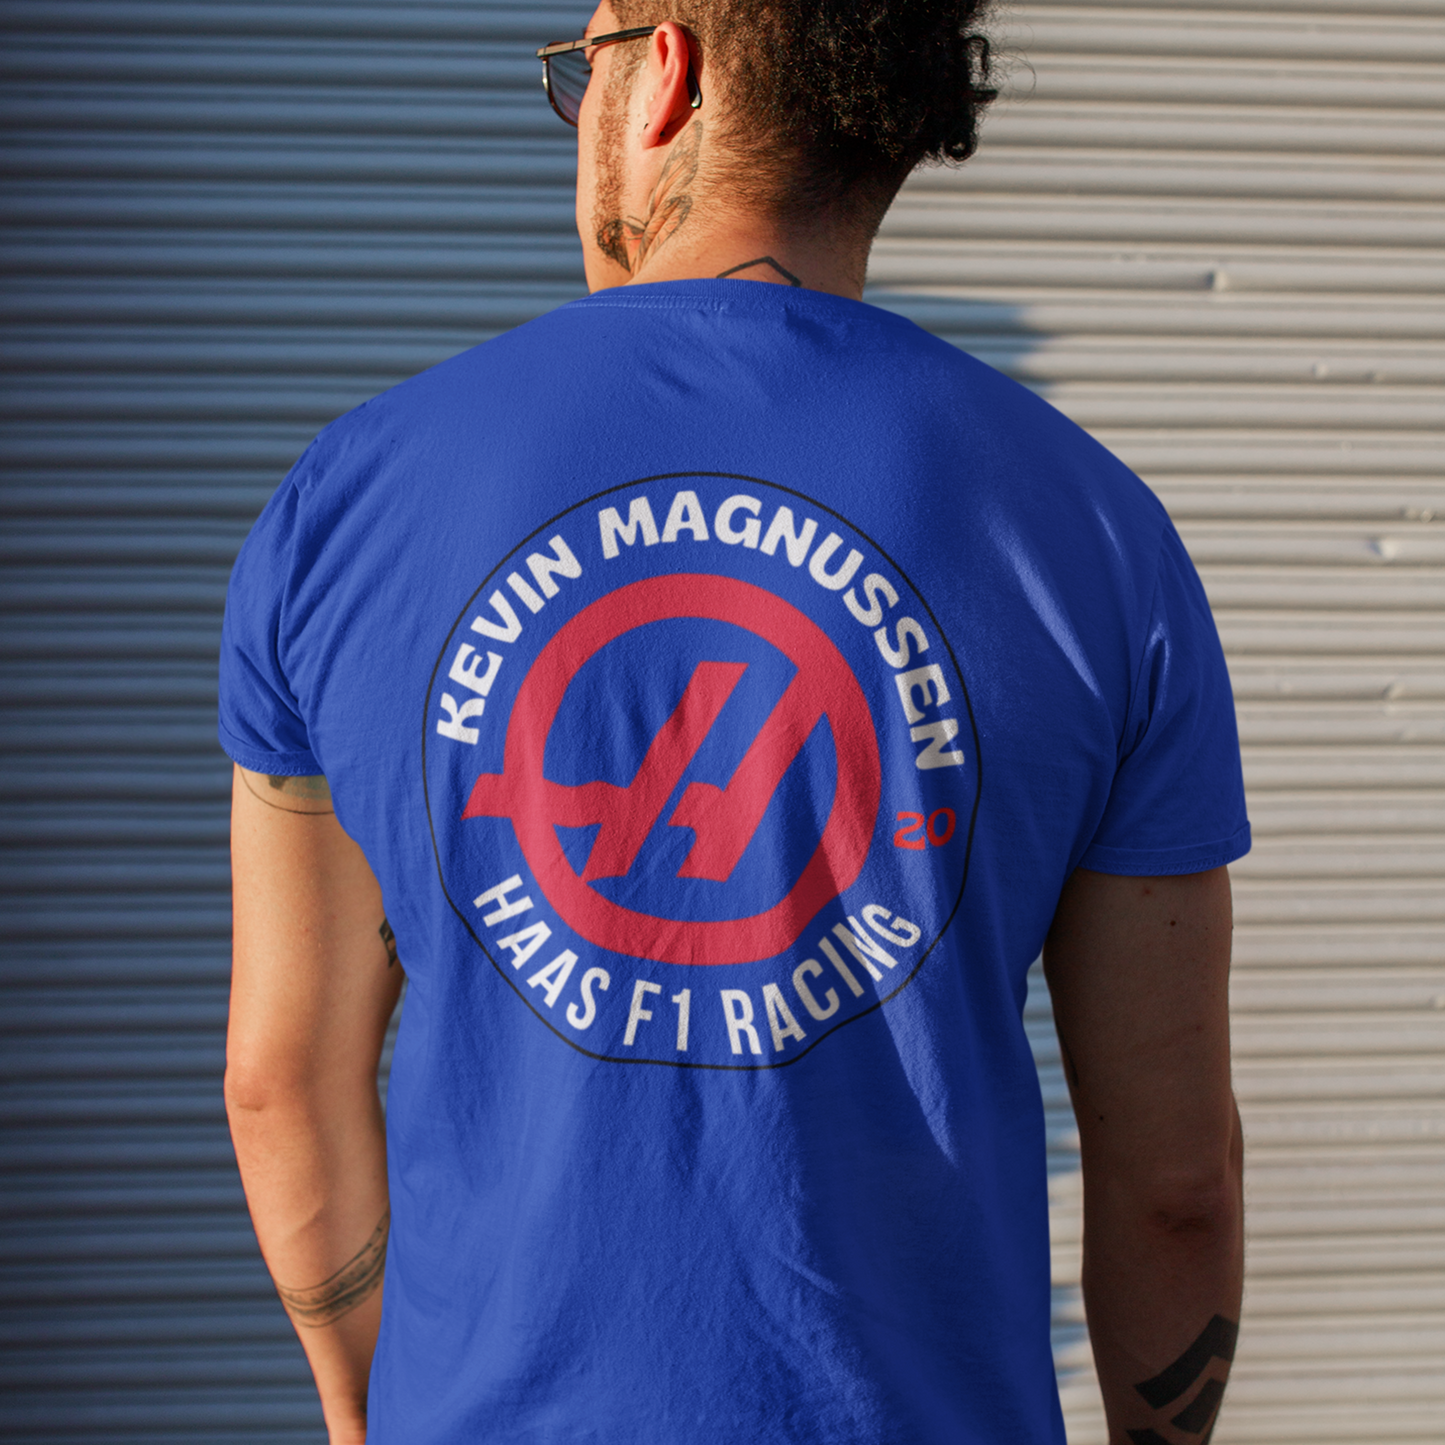 Kevin Magnussen Team Hass Unisex T-Shirt